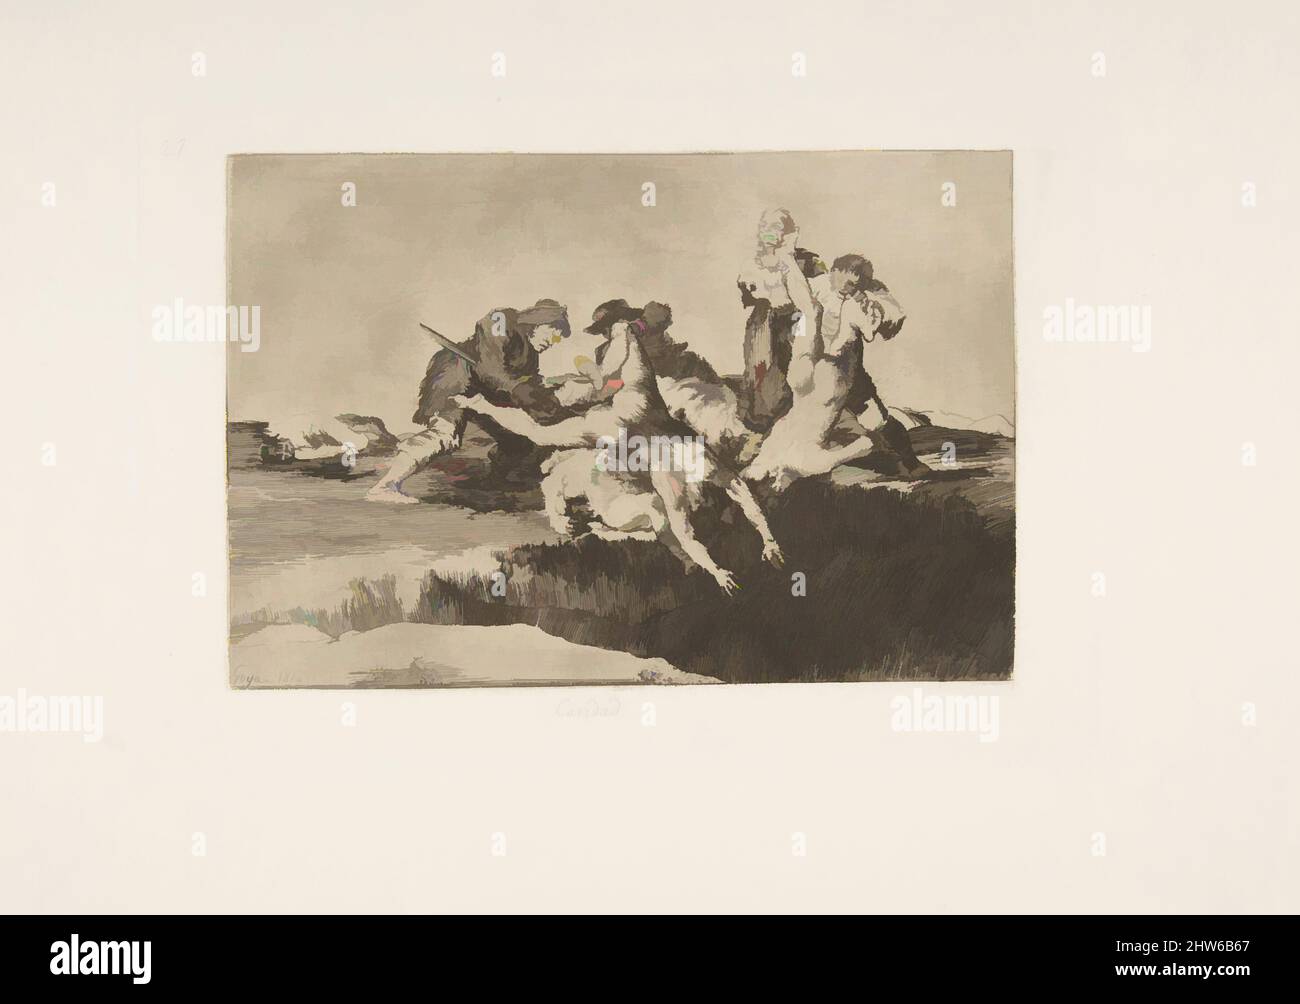 Art inspiré par la planche 27 de 'les désastres de la guerre' (Los Desastres de la Guerra):' Charité.'(Caridad.), 1810 ( publié en 1863), Etching, lavis, Drypoint, burin, Et burnisher, plaque : 6 5/16 × 9 1/4 in. (16 × 23,5 cm), Prints, Goya (Francisco de Goya y Lucientes) (Espagnol, Fuendetodos, oeuvres classiques modernisées par Artotop avec une touche de modernité. Formes, couleur et valeur, impact visuel accrocheur sur l'art émotions par la liberté d'œuvres d'art d'une manière contemporaine. Un message intemporel qui cherche une nouvelle direction créative. Artistes qui se tournent vers le support numérique et créent le NFT Artotop Banque D'Images